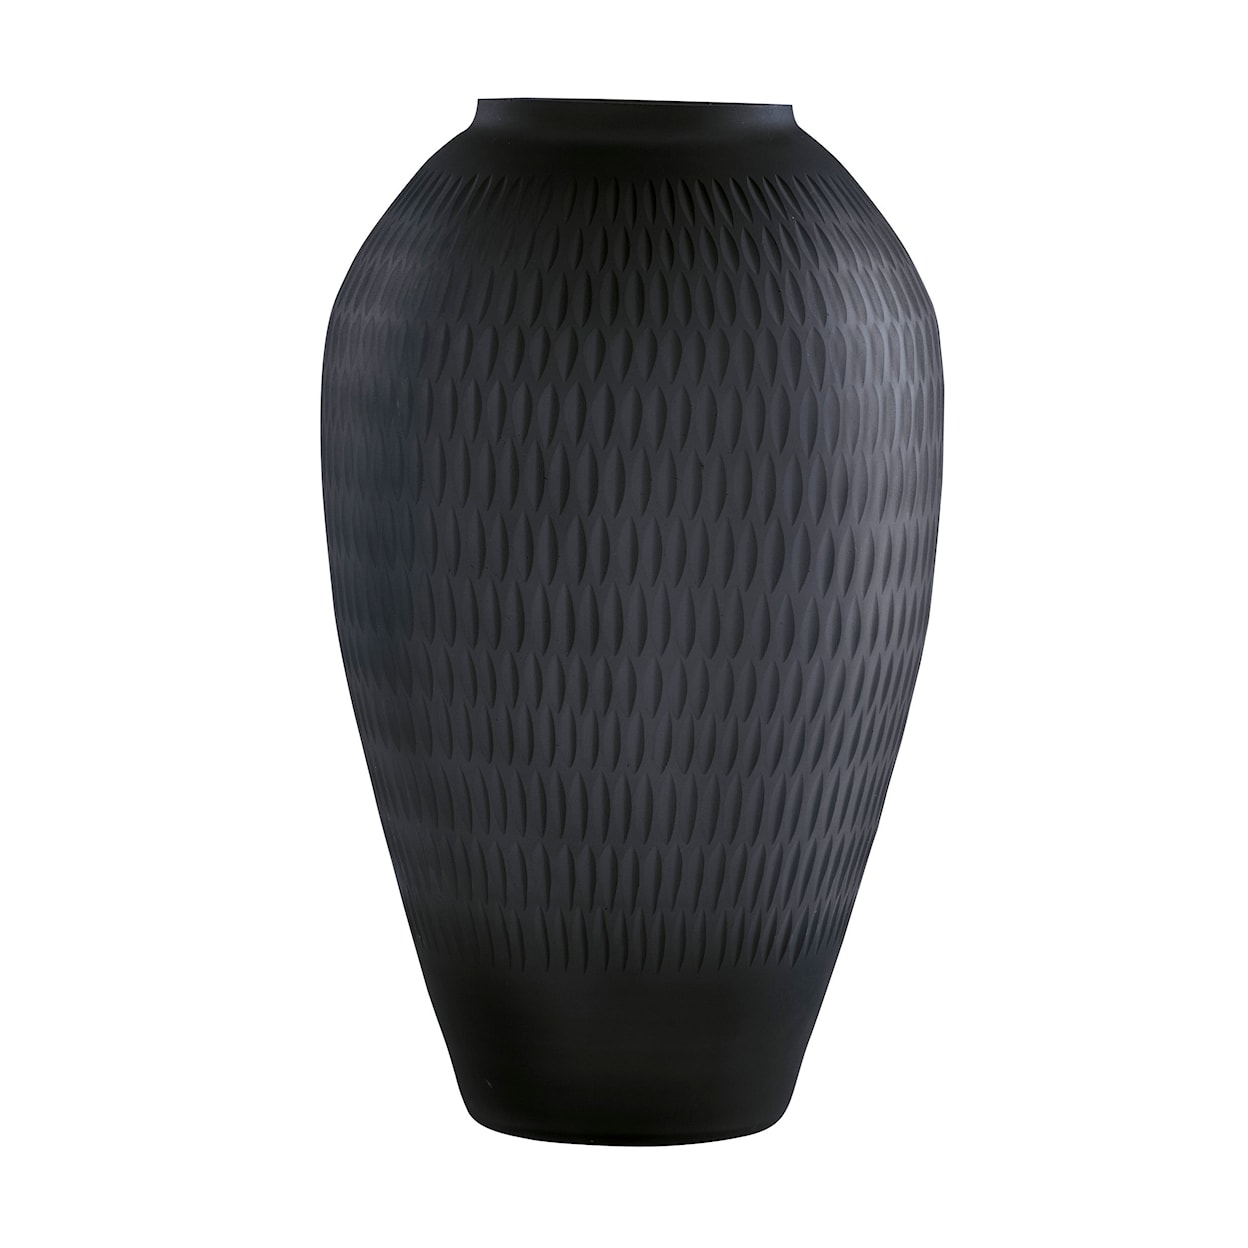 Ashley Furniture Signature Design Accents Etney Vase